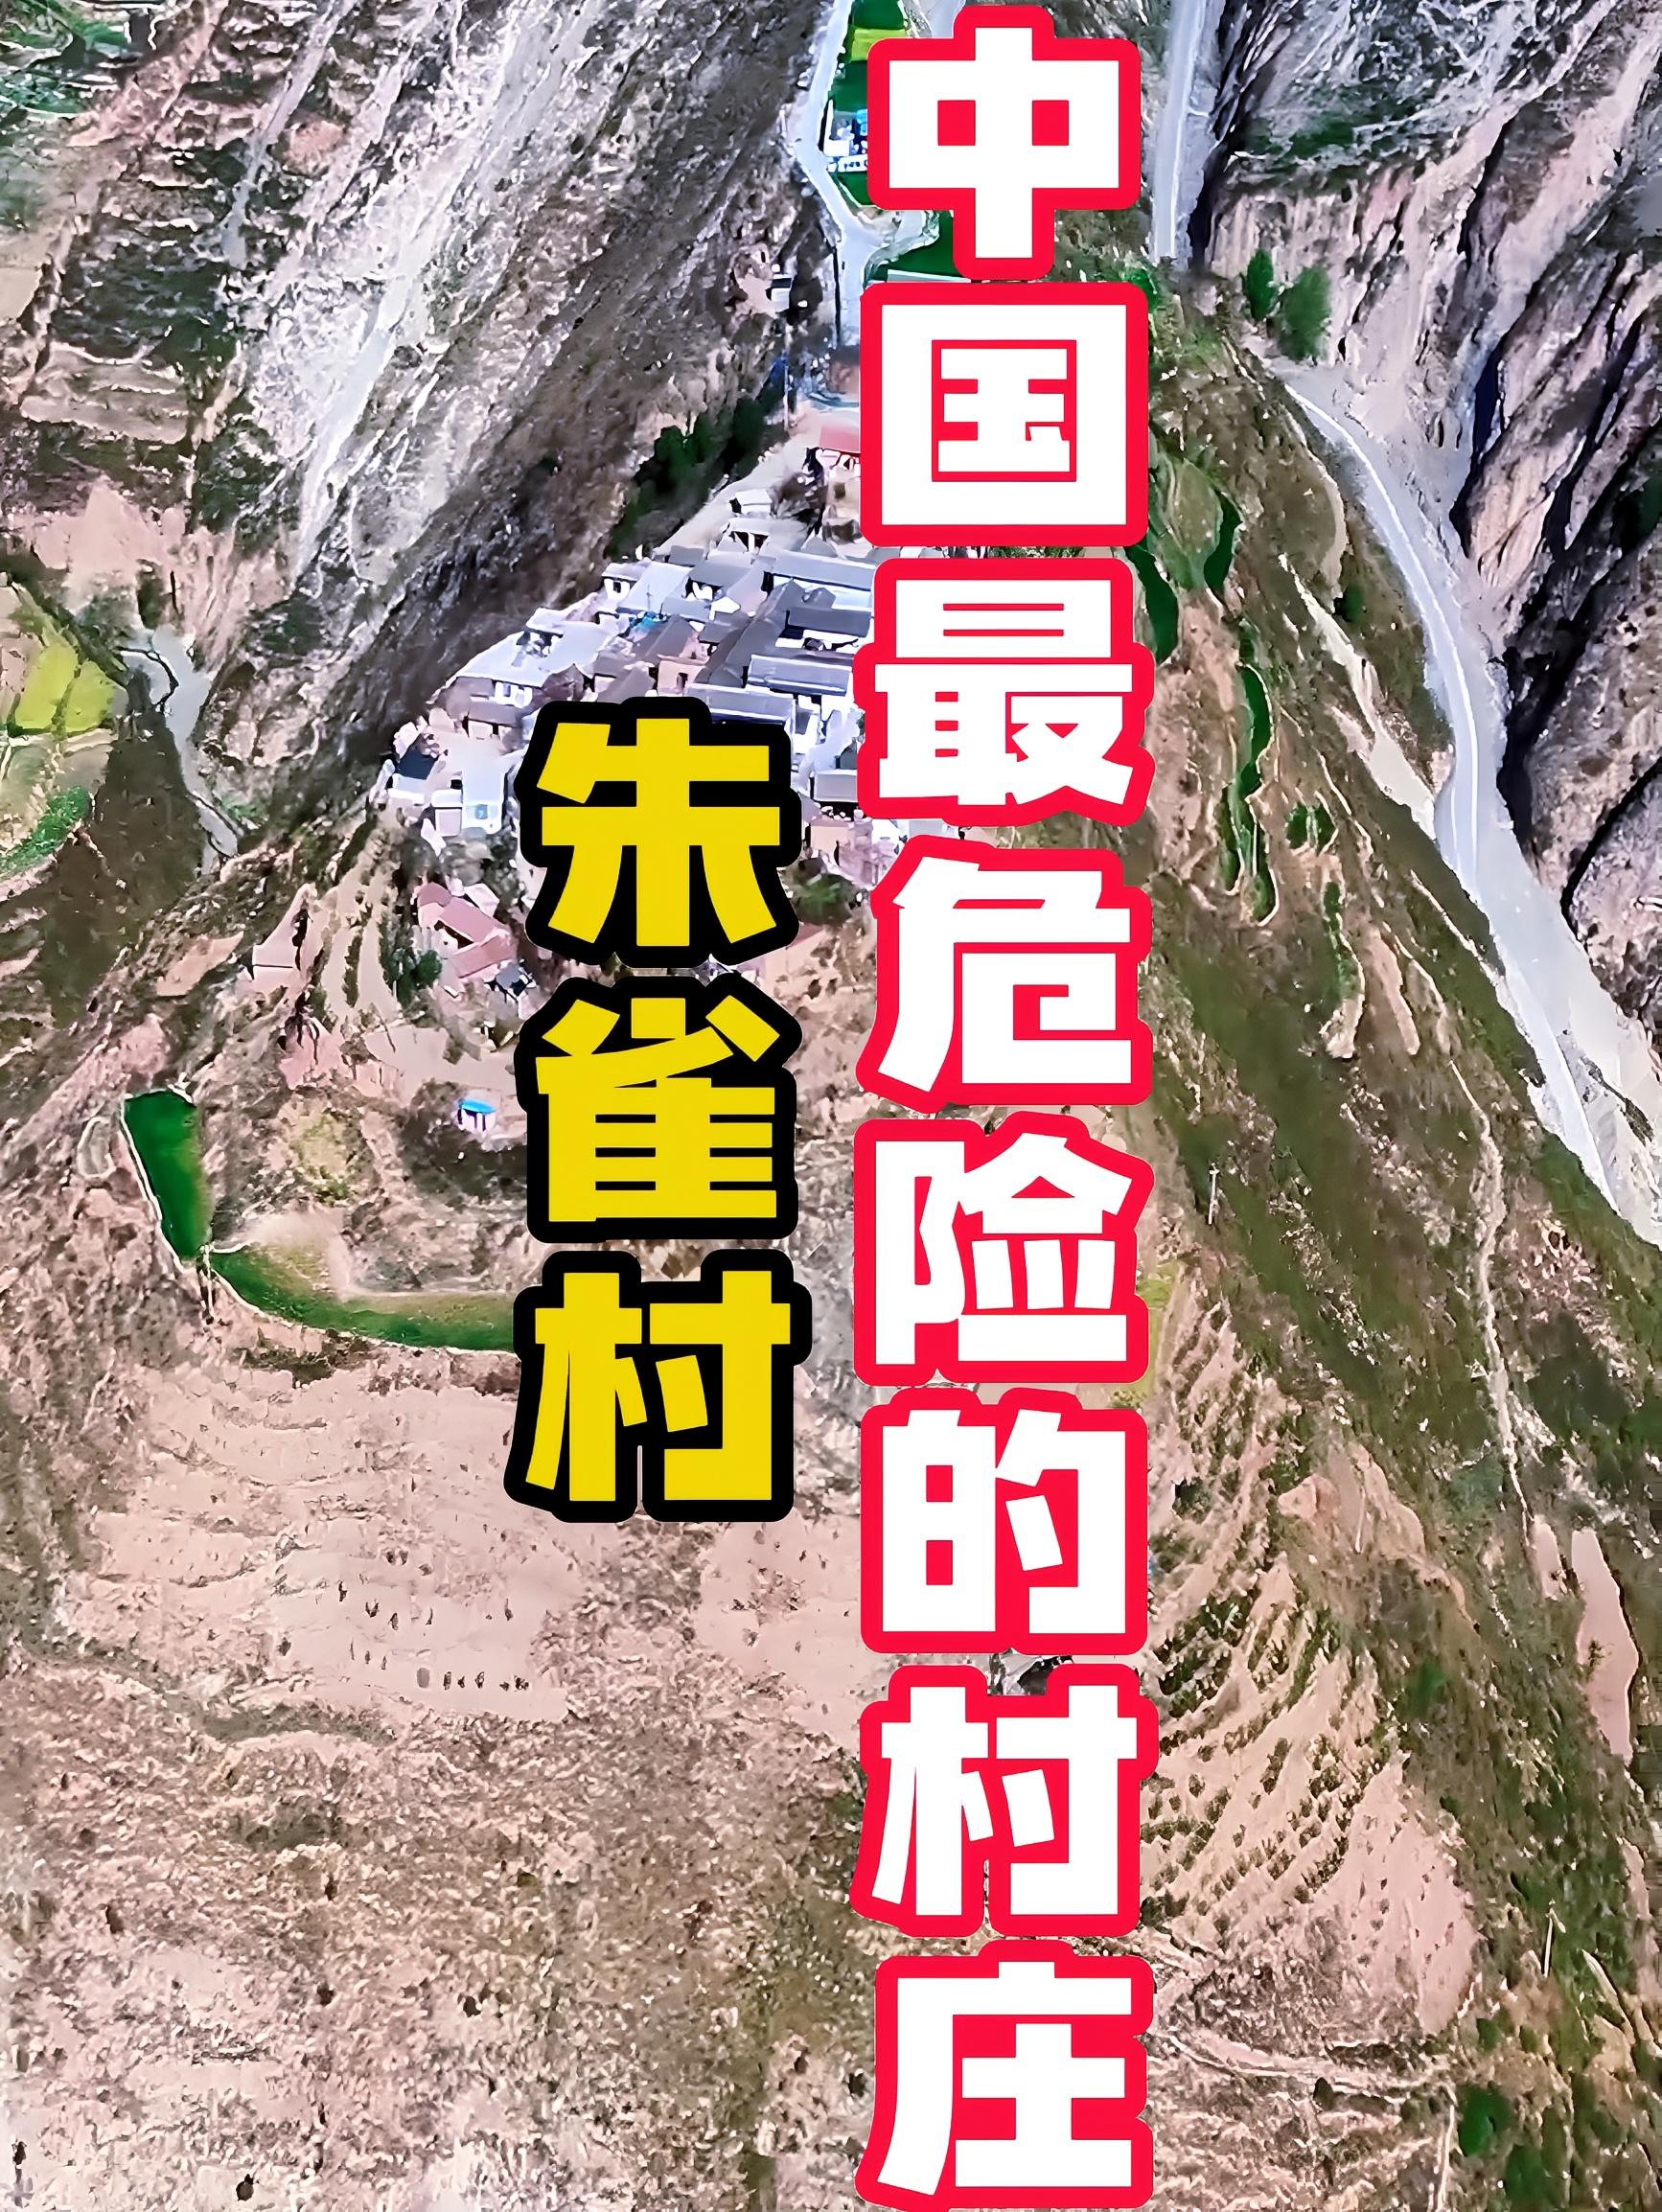 陇南朱雀村,一座位于山顶上的悬崖村,他们为何要生活在这里?